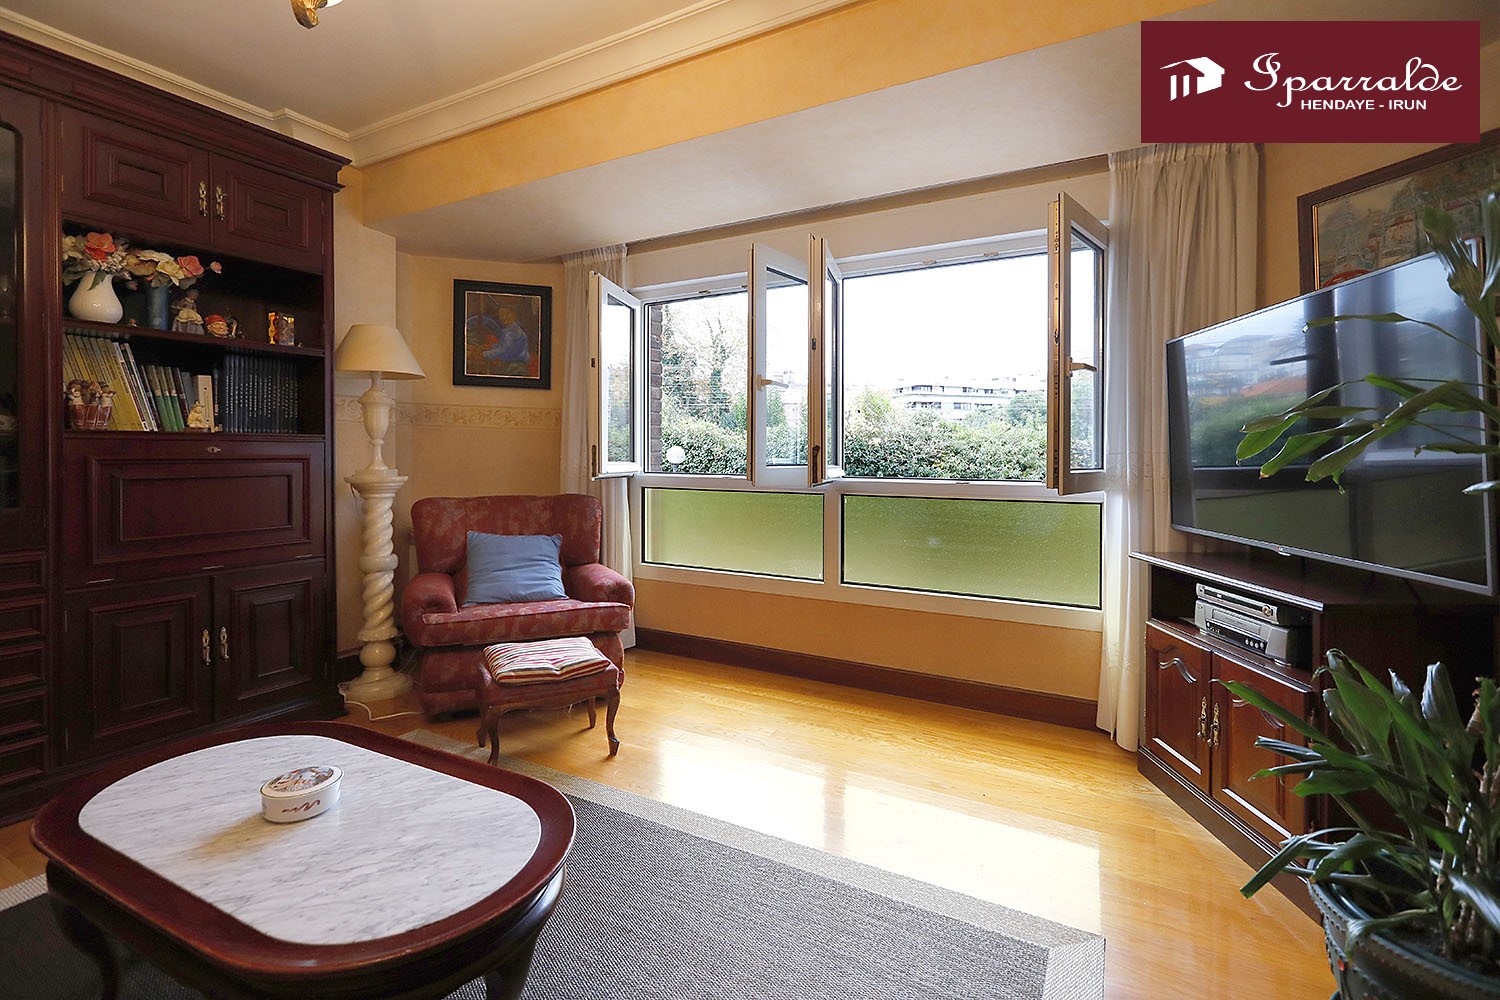 Bonito piso de tres habitaciones en zona Anzaran, luminoso y soleado....